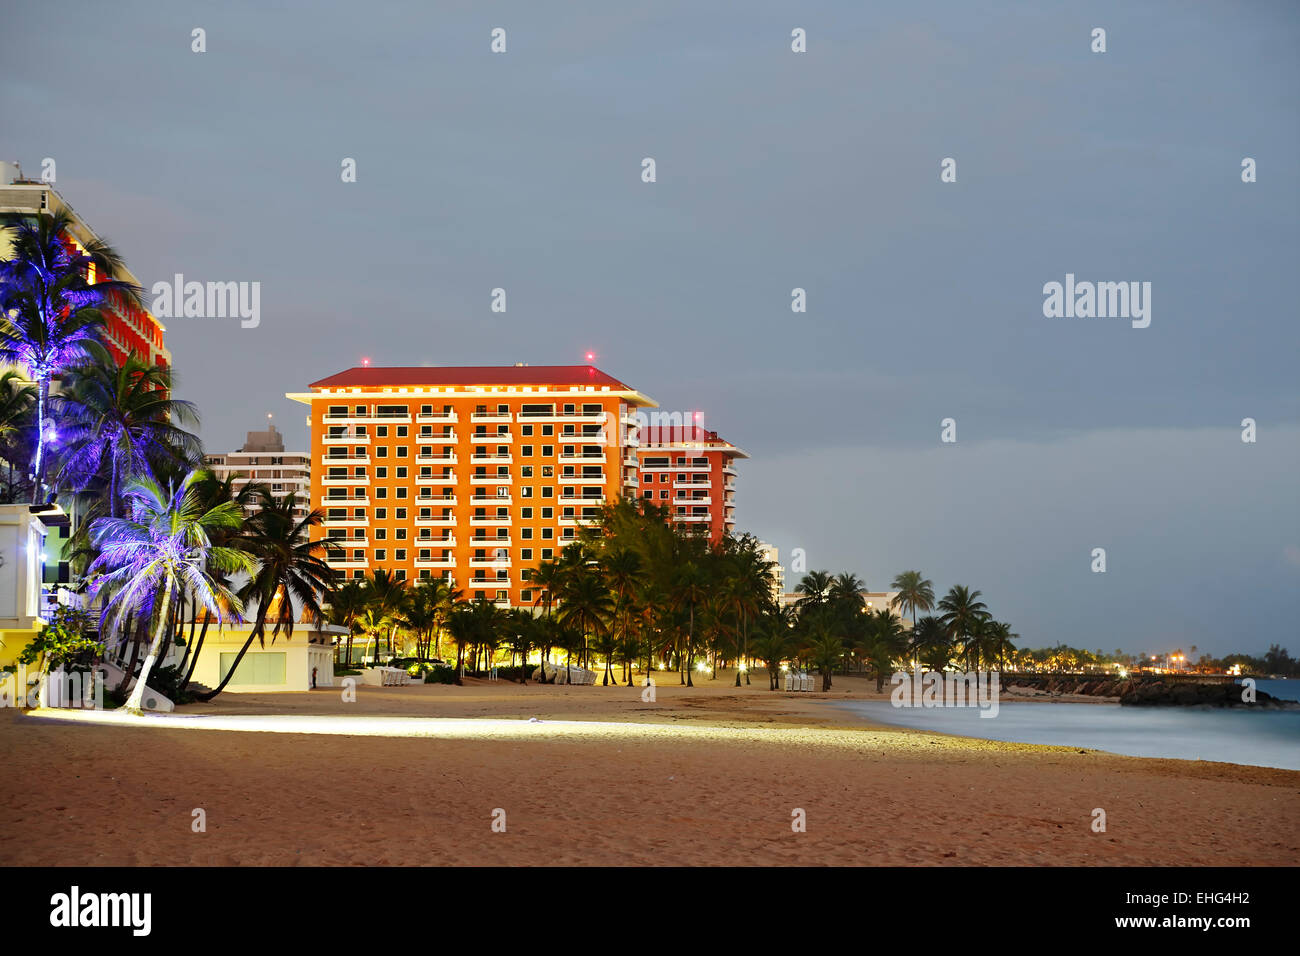 El Condado Beach and skyline, El Condado, San Juan, Puerto Rico Stock Photo